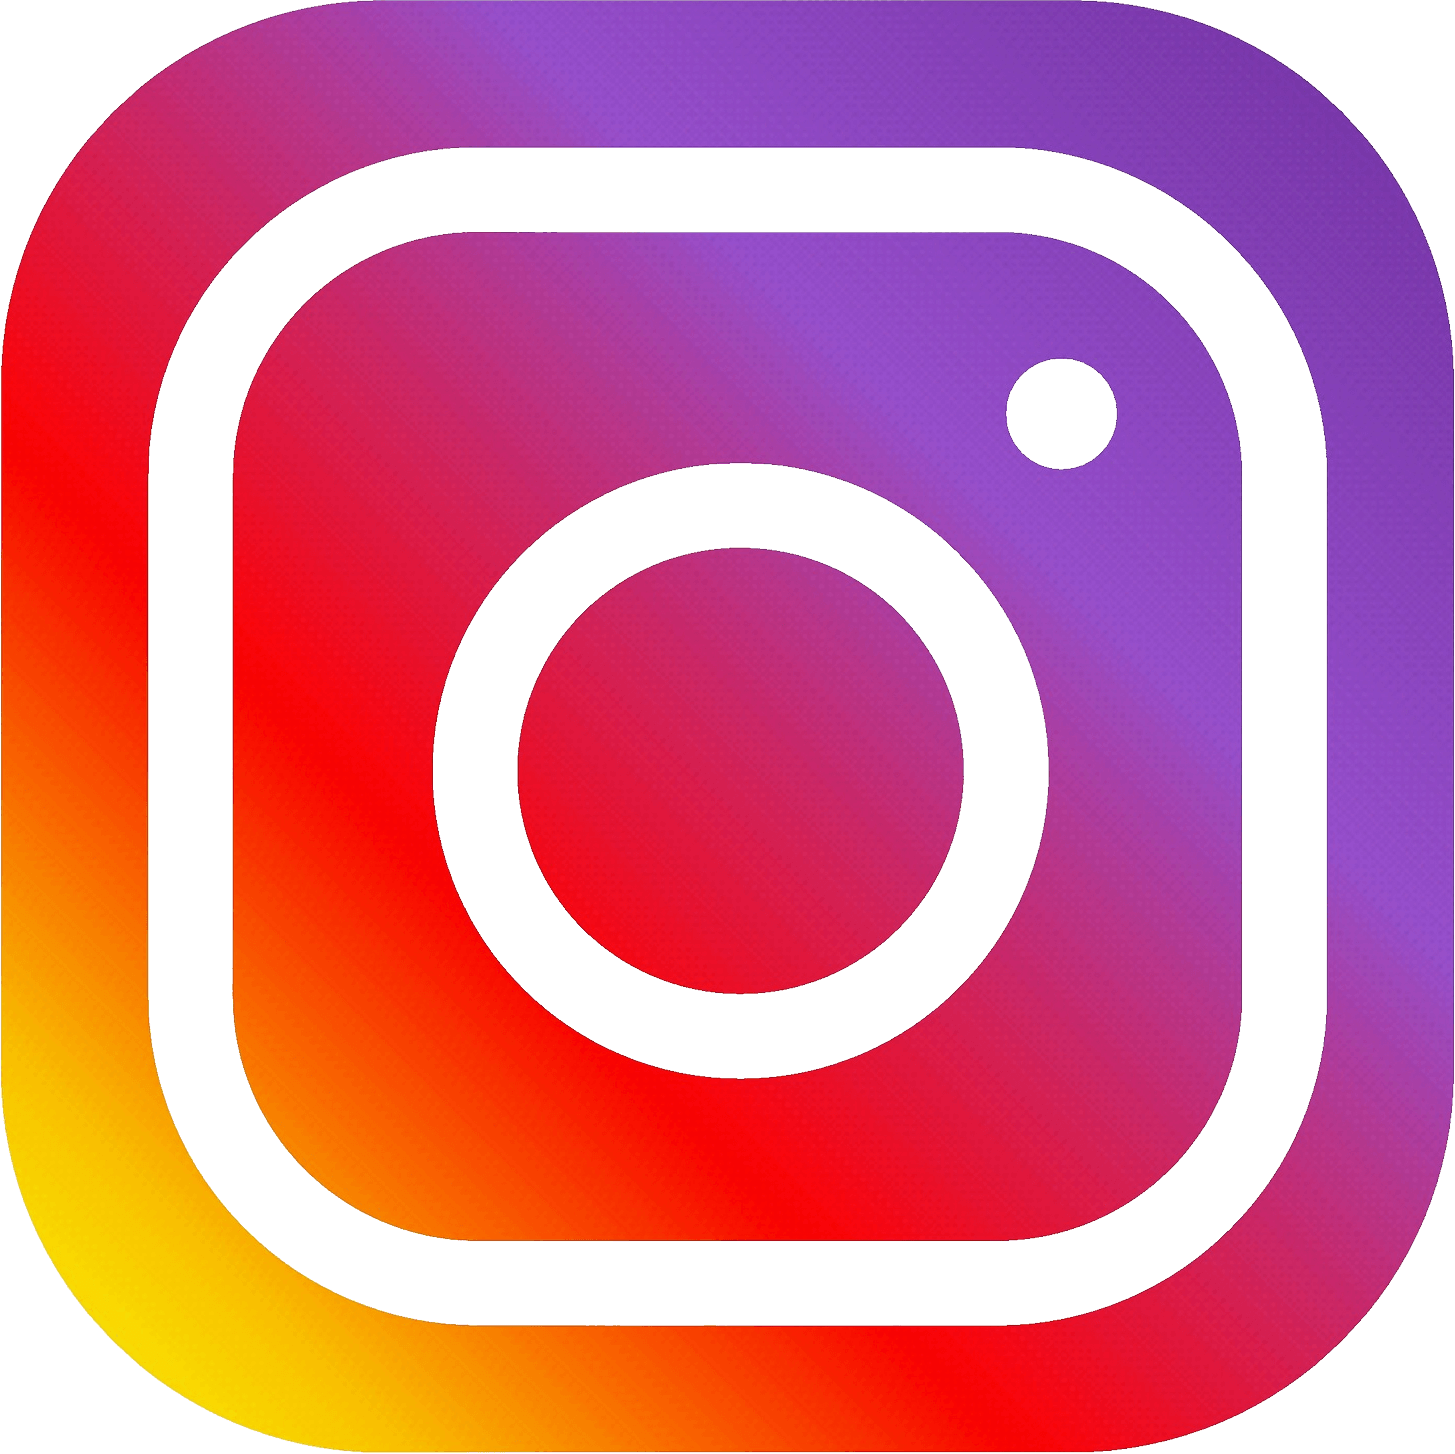 Følg oss på Instagram - Nordesign